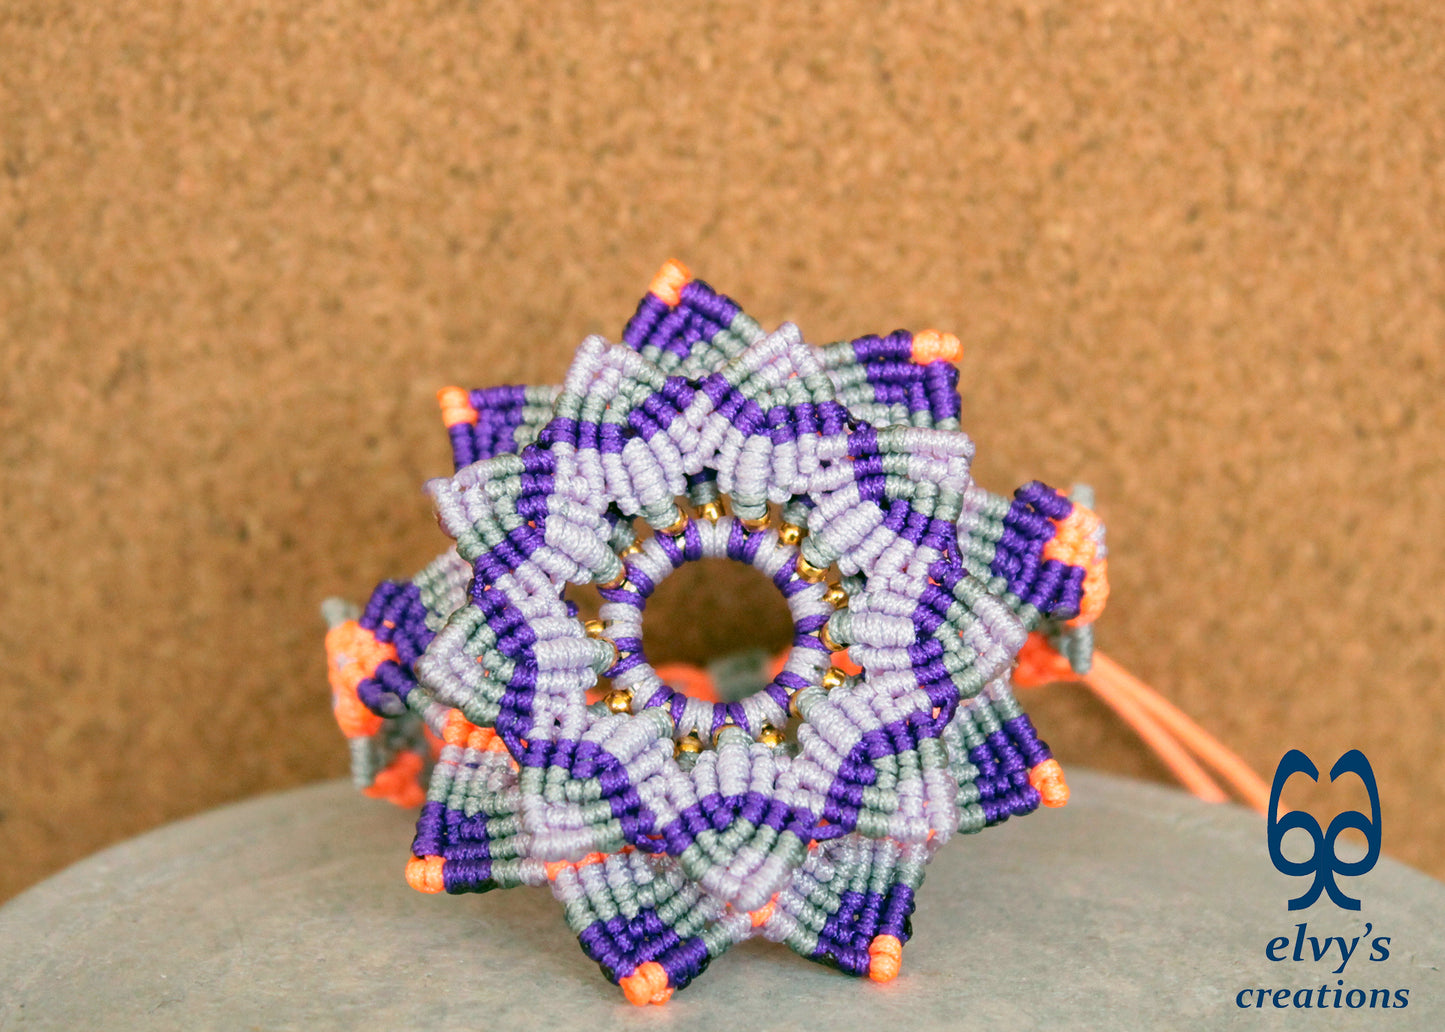 Handmade Macrame Bracelet, Gemstone Beaded Mandala Flower, Unique Birthday Gift for Women